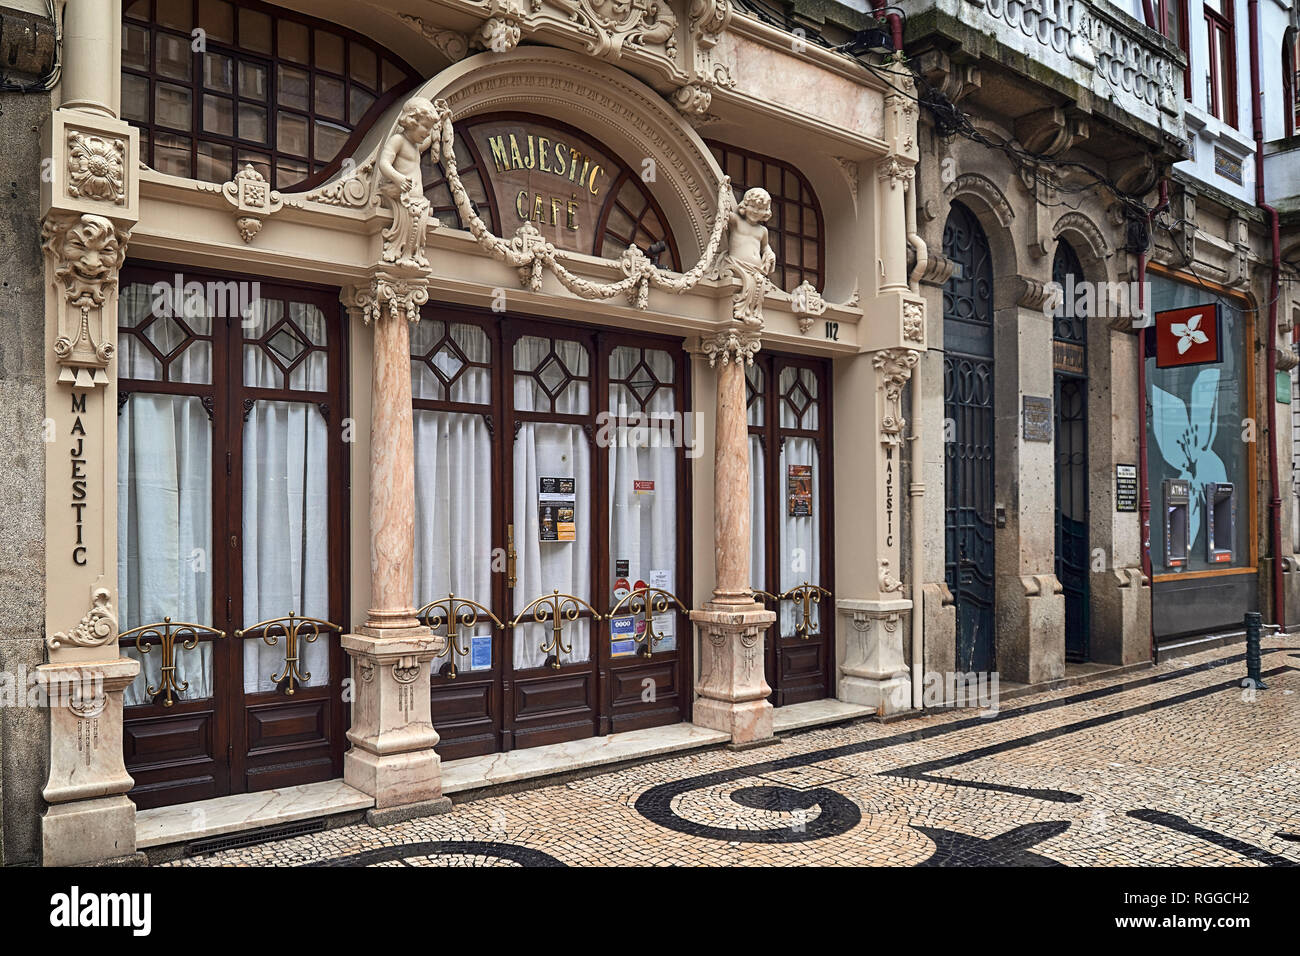 Cafetería Majestic del año 1921, el lugar de reunión de personajes ilustres de la época. Patrimonio Cultural de la ciudad de Oporto, Portugal, Europa Foto de stock